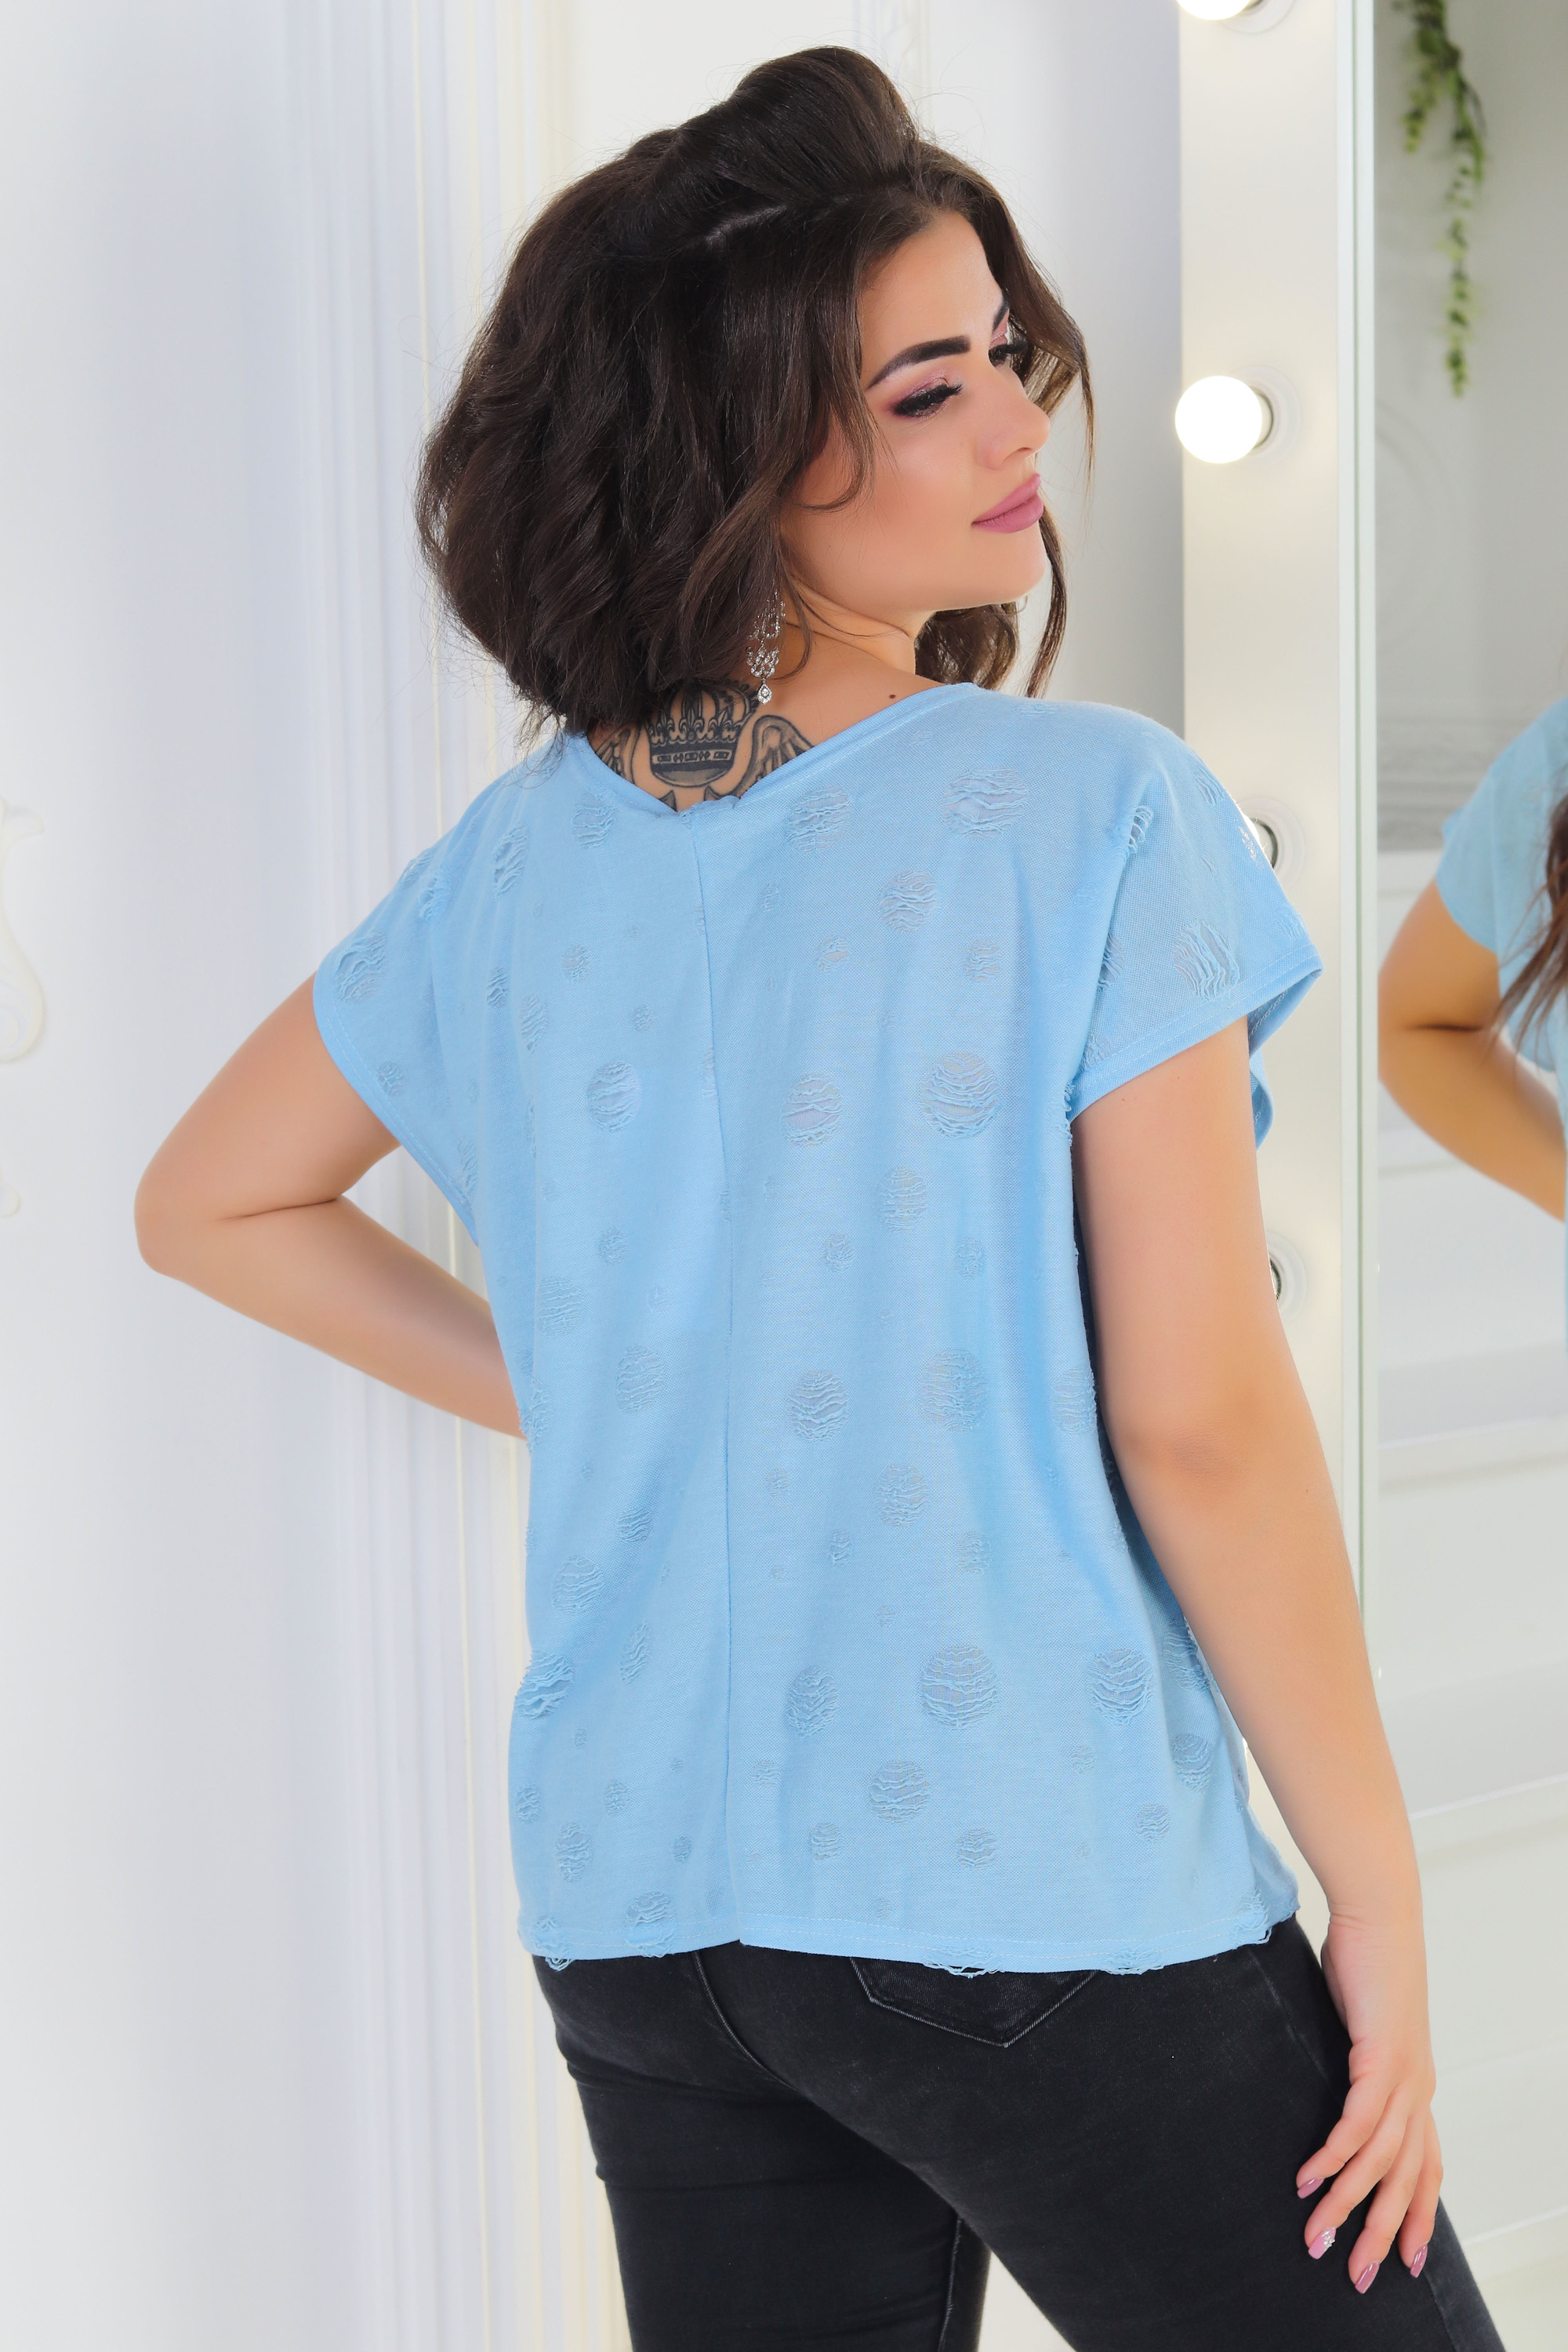 Блакитна жіноча футболка Птах 0225, фото 2